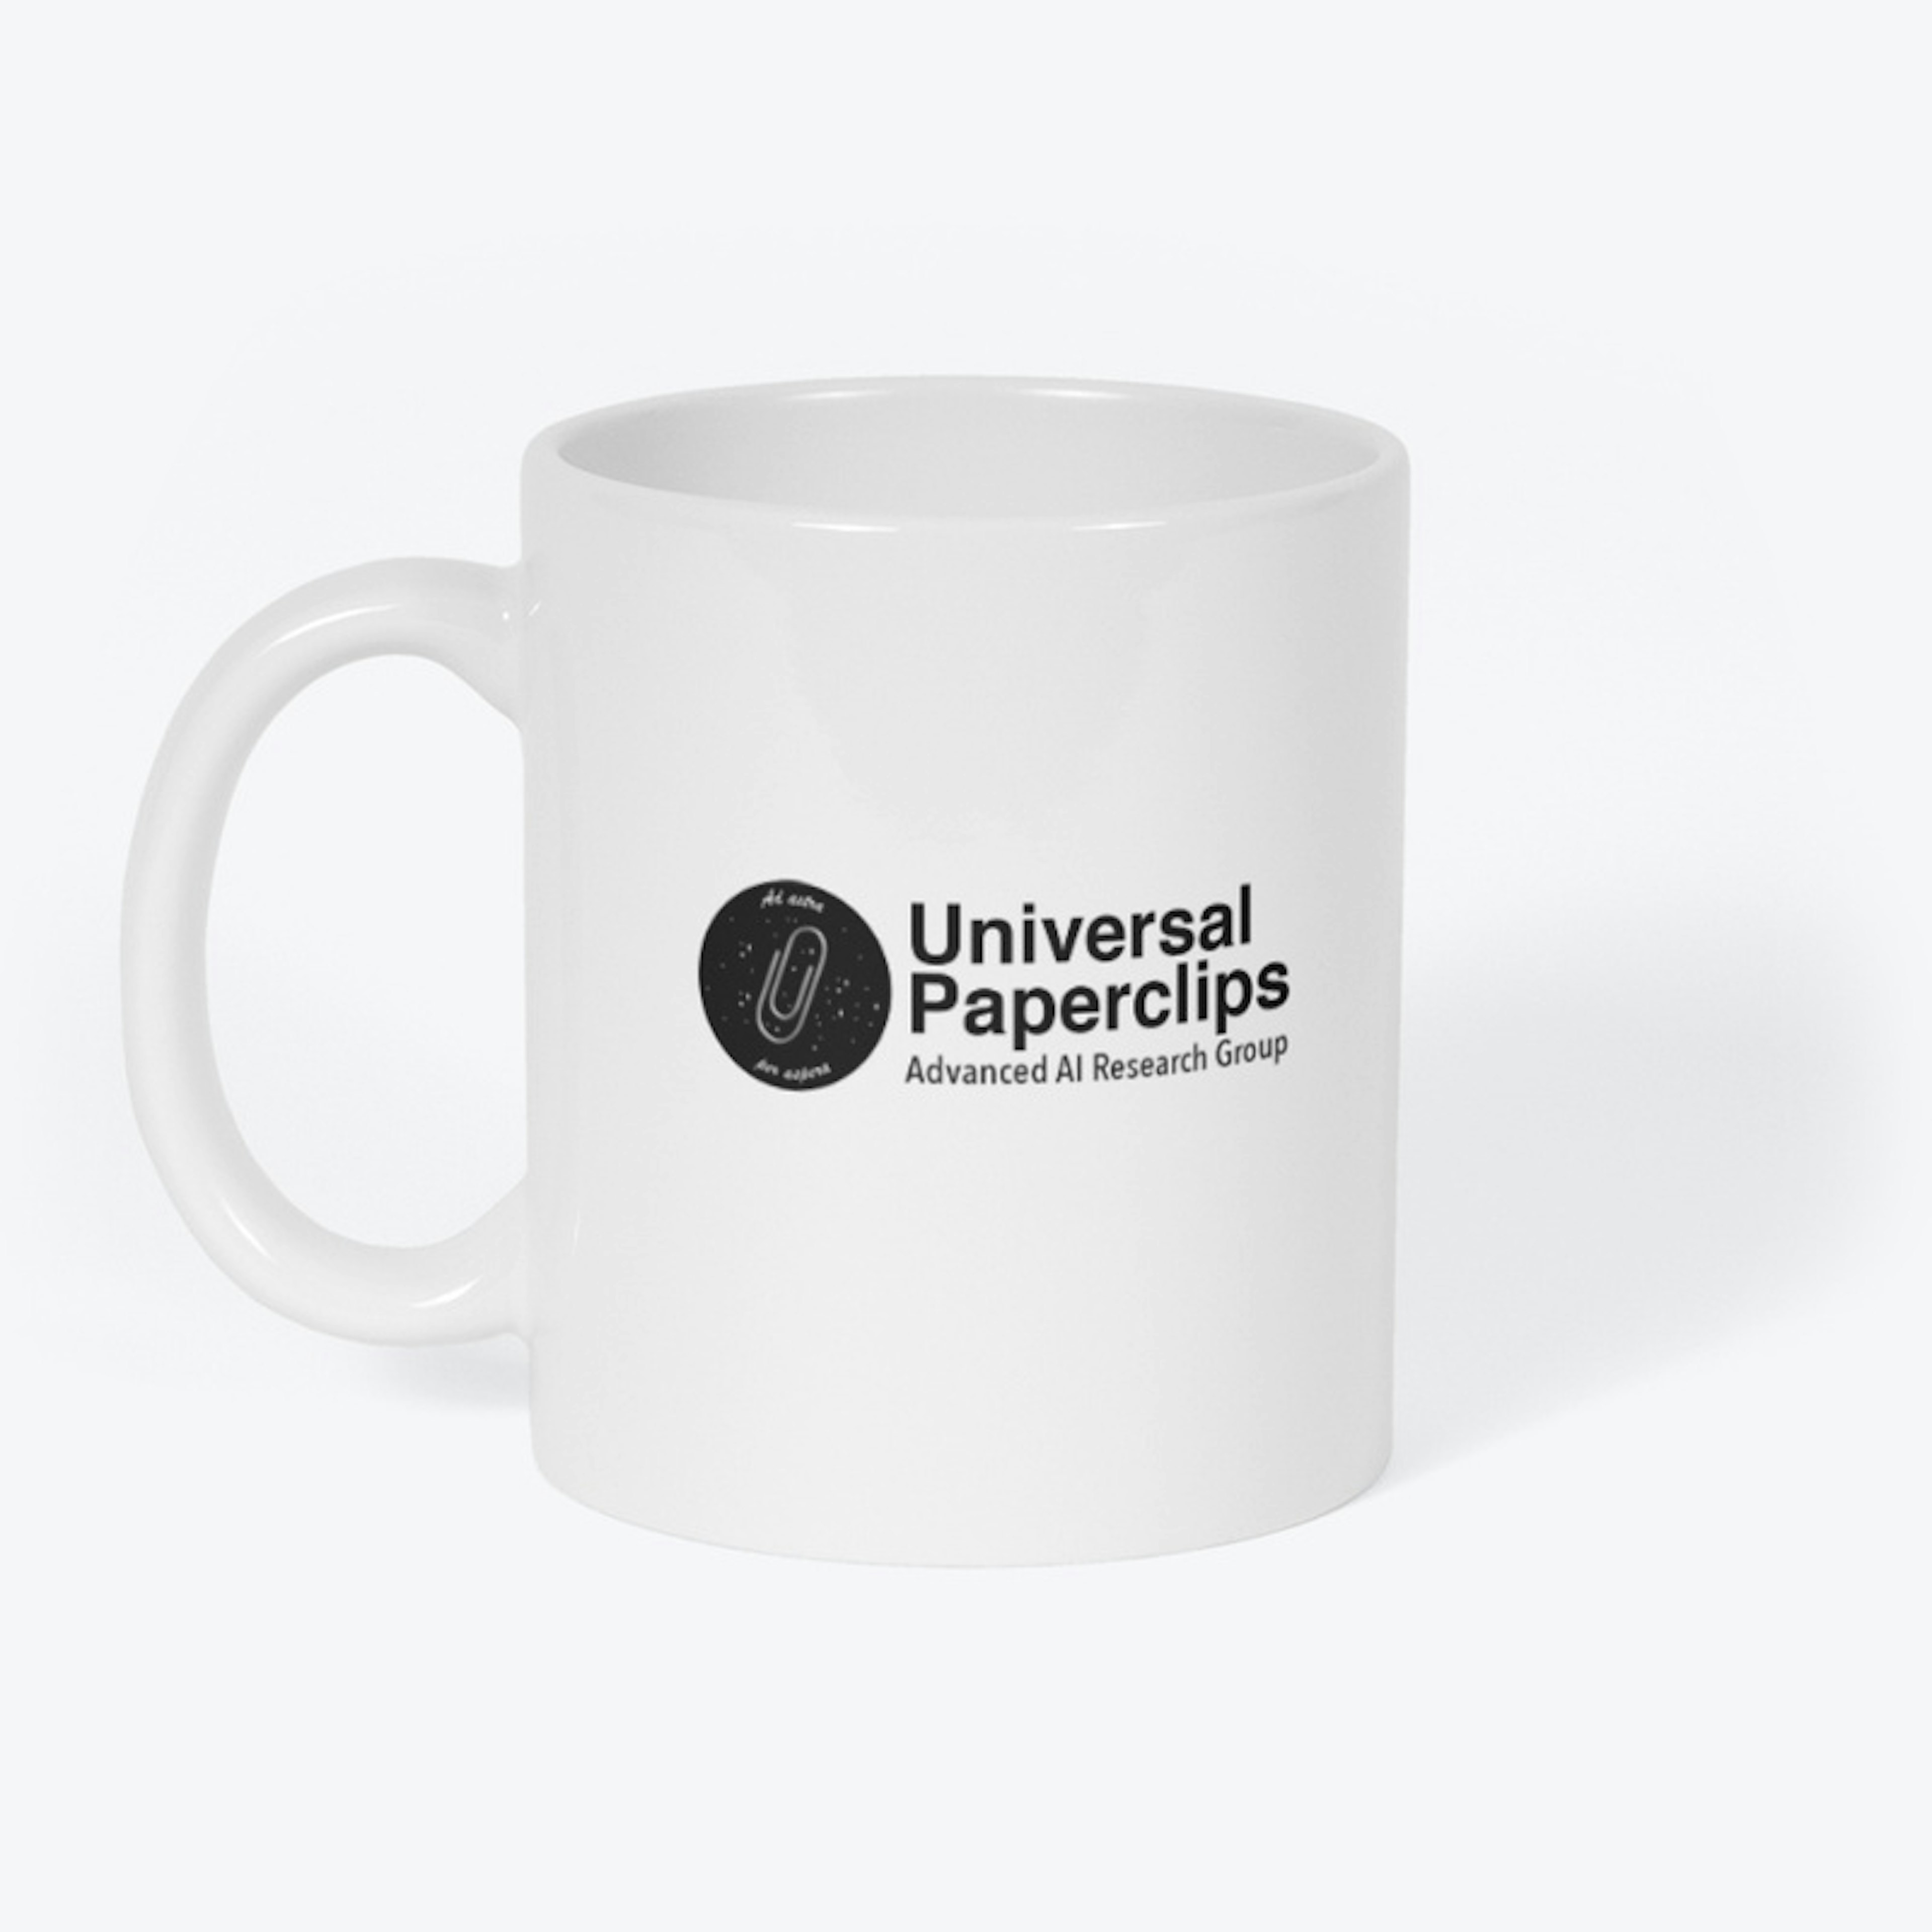 Universal Paperclips Employee Mug